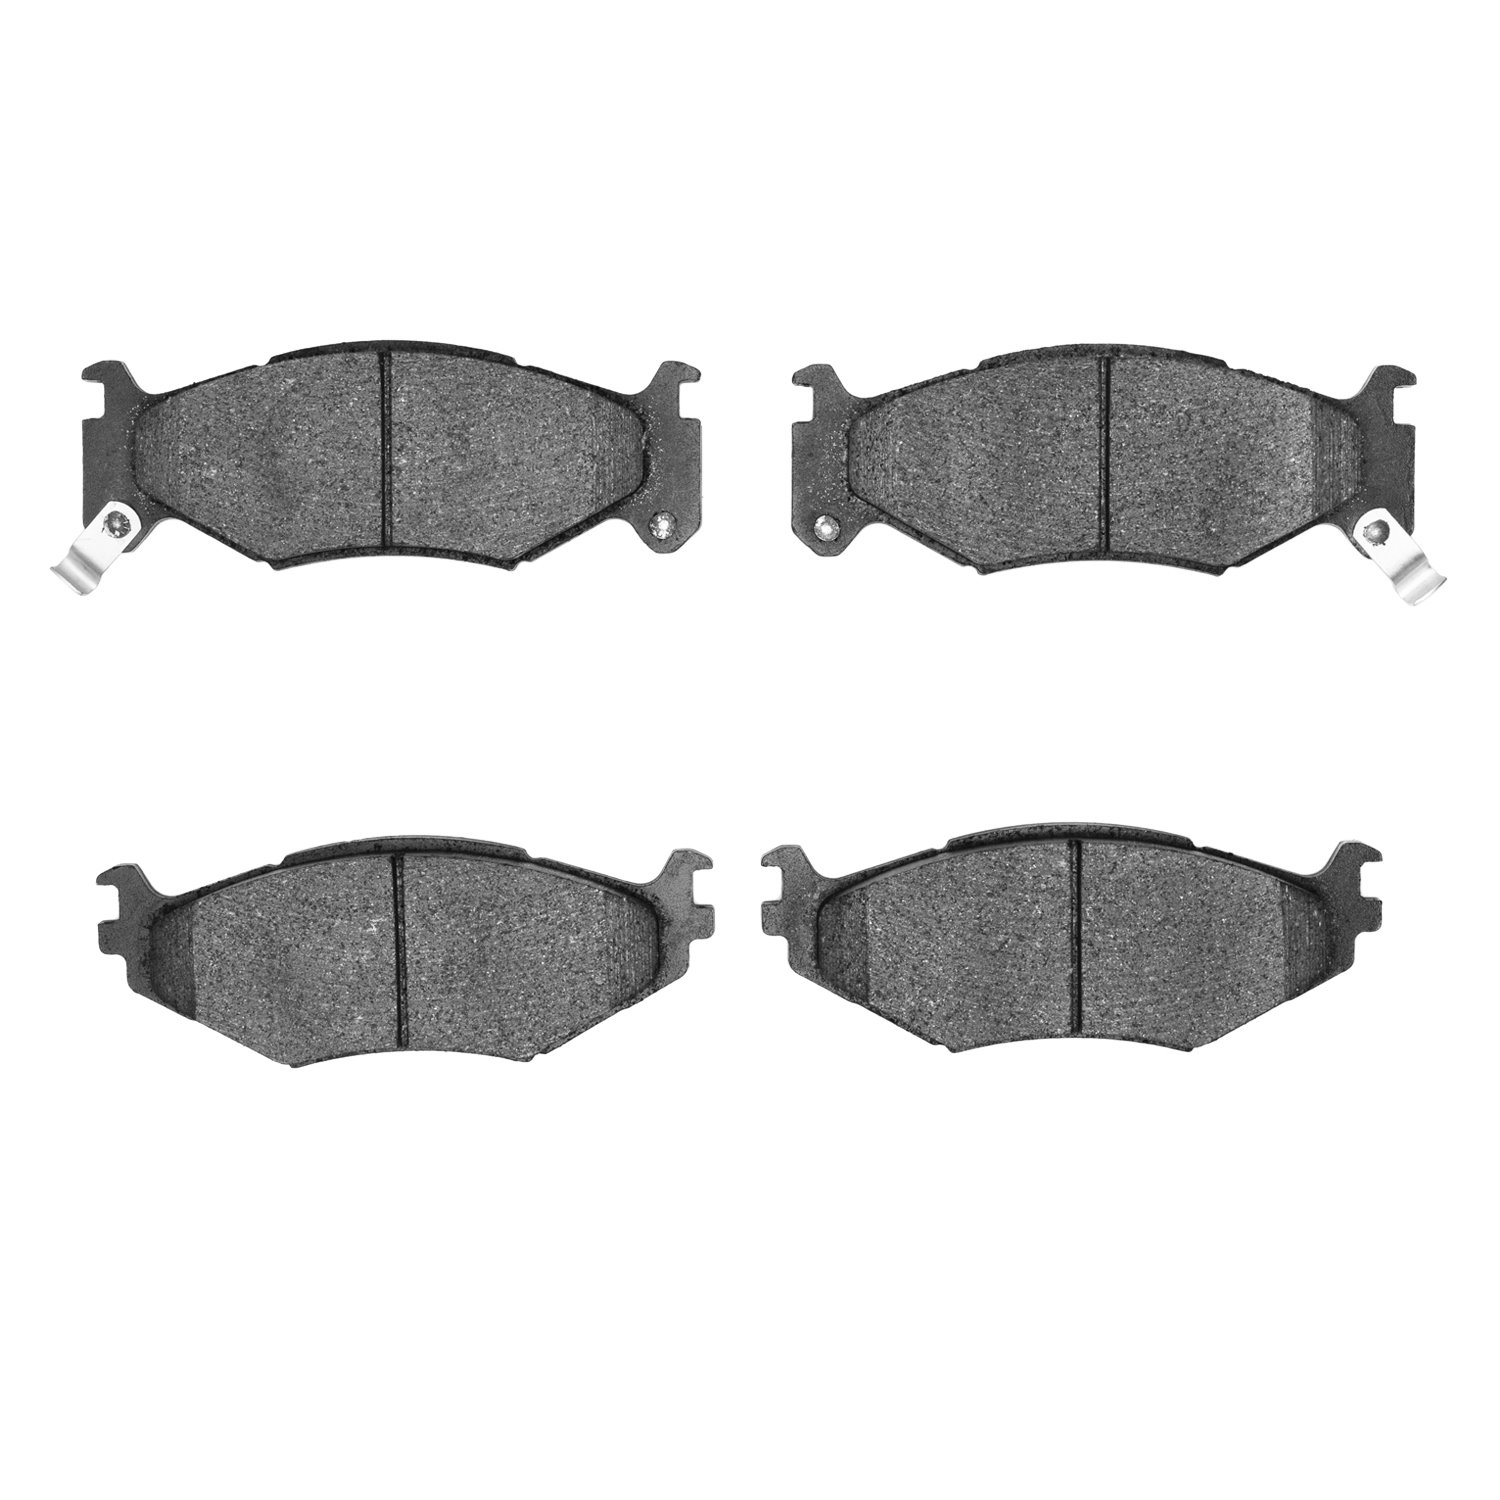 Ceramic Brake Pads, 1991-1995 Mopar, Position: Front